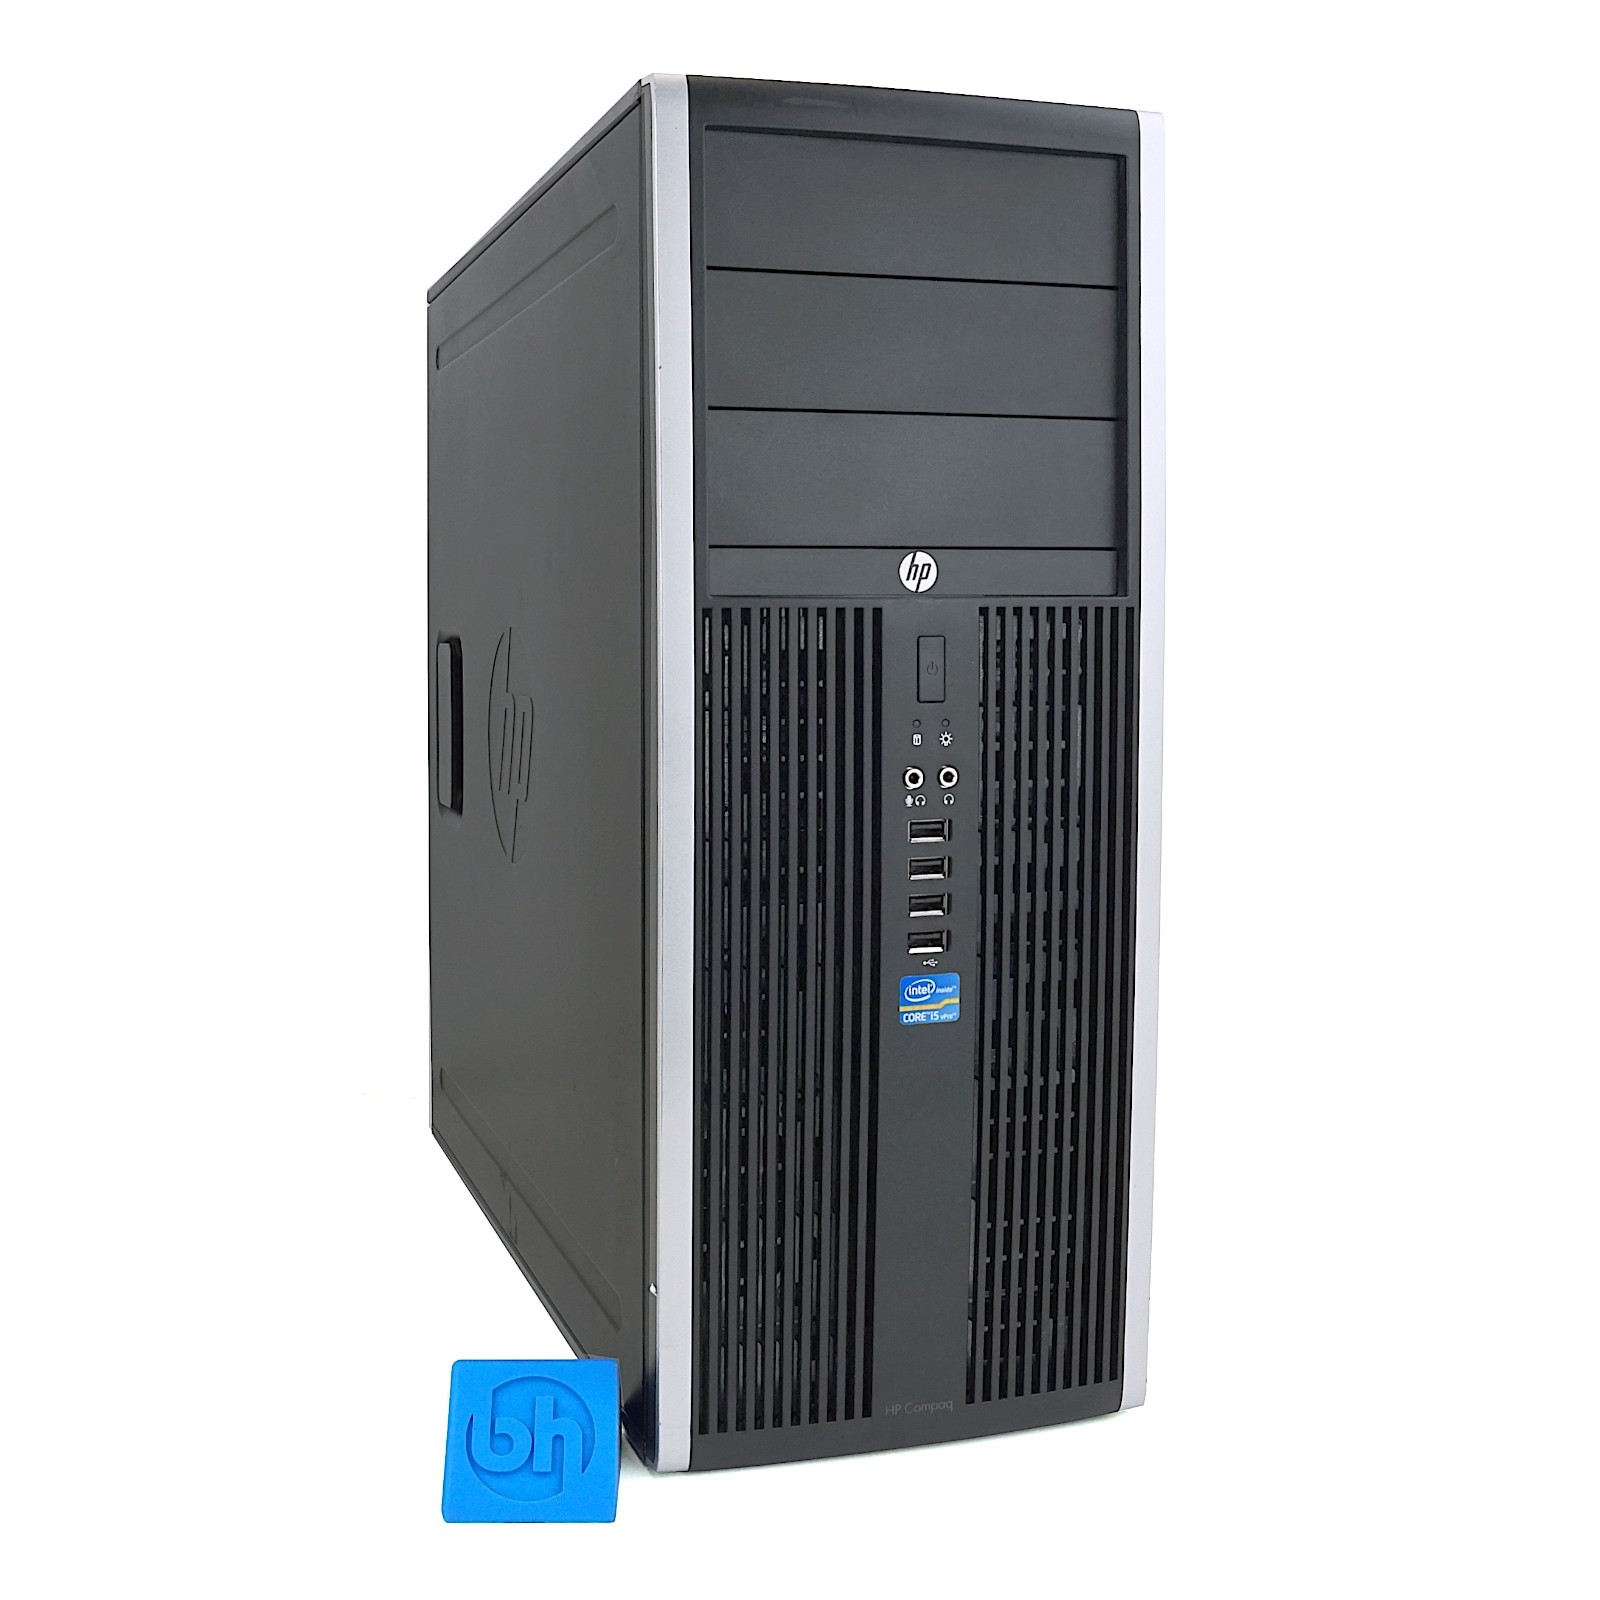 HP Compaq Elite 8300 CMT Desktop PC | Configure To Order